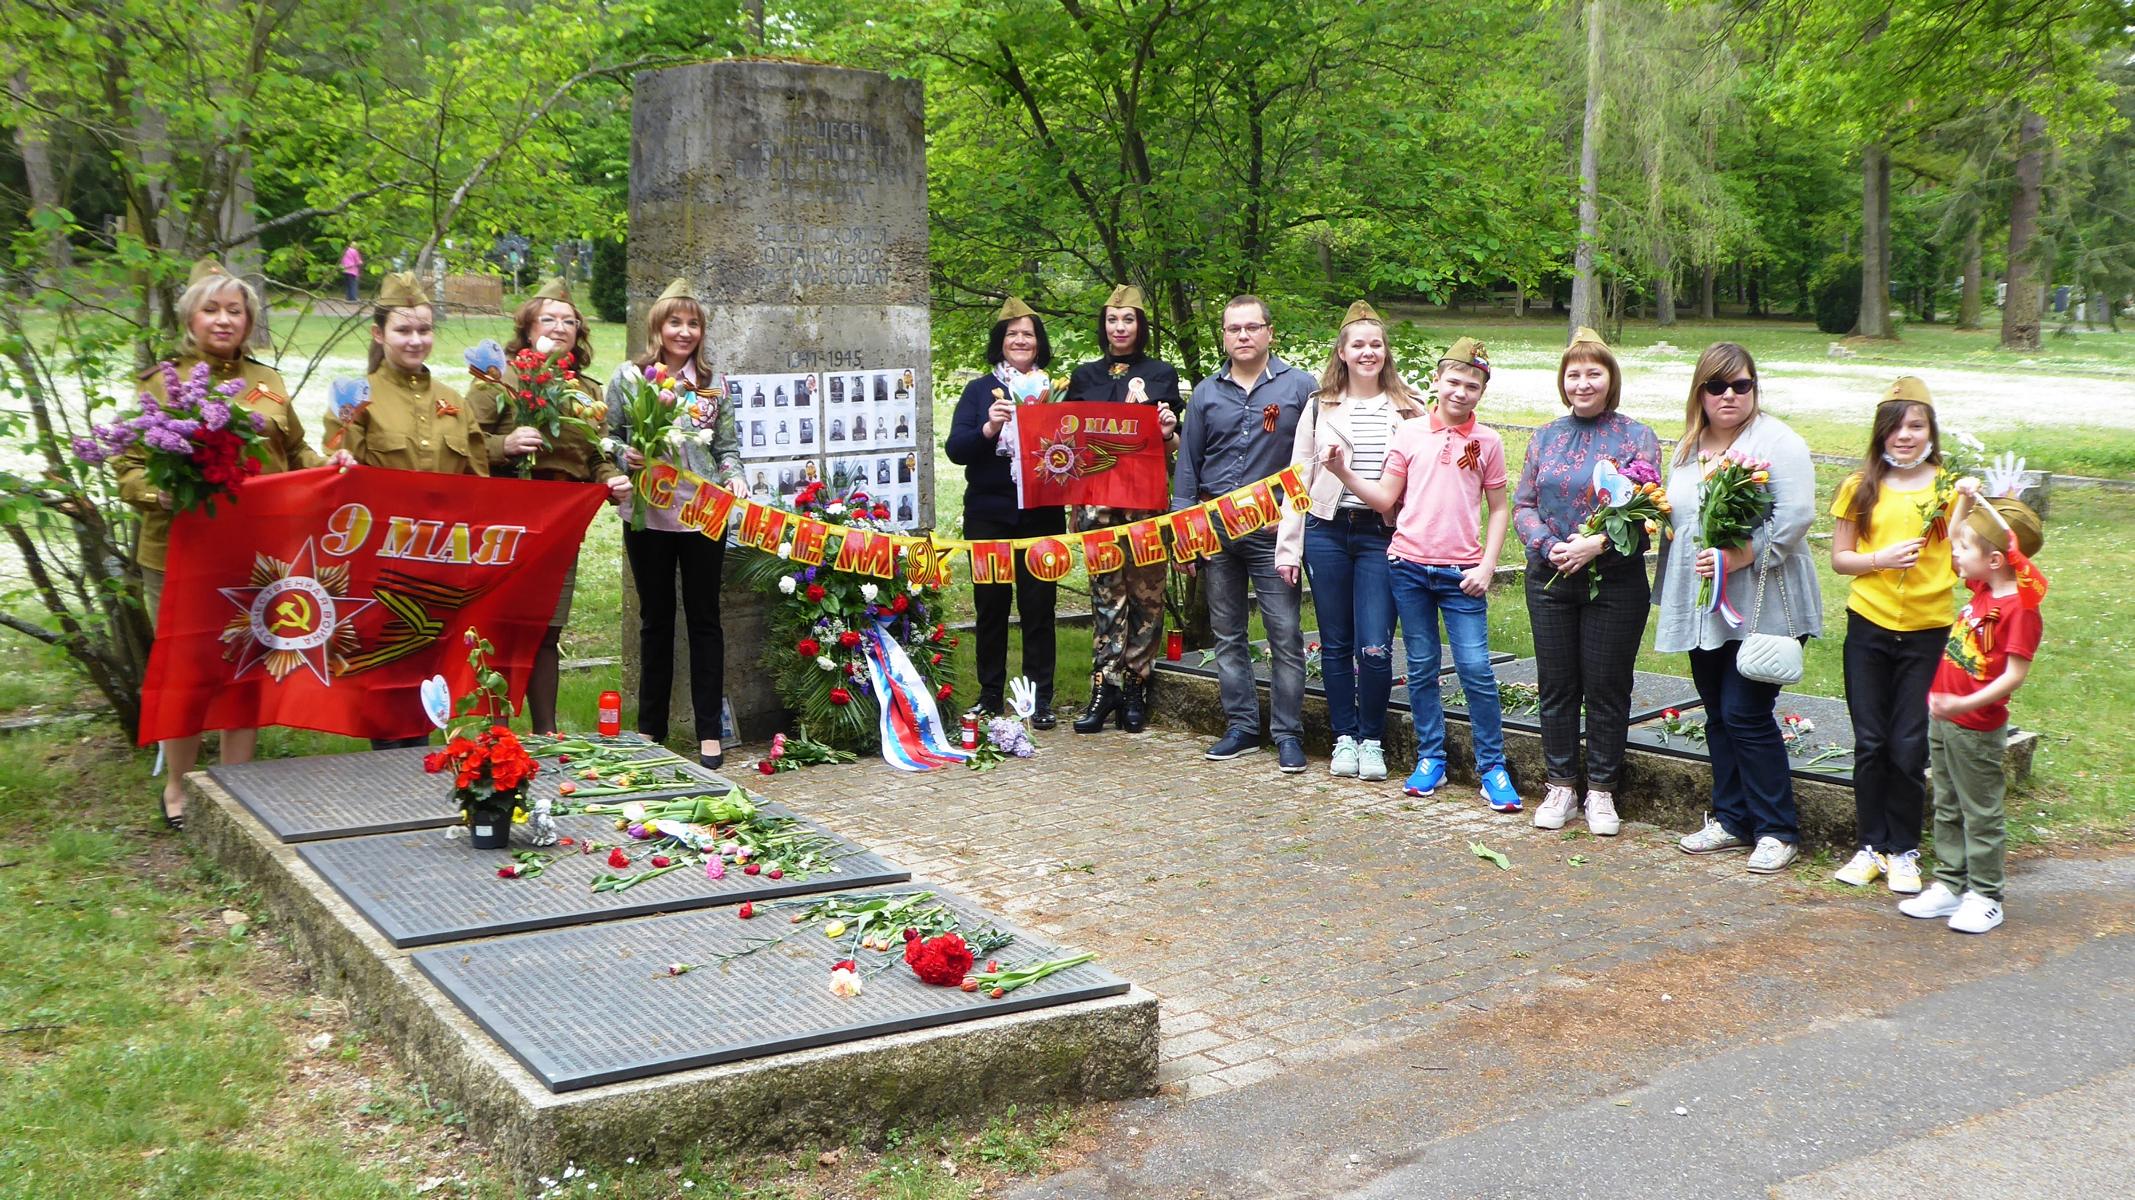 Nrnberg - Friedensbotschaft - Antifaschismus, Tag der Befreiung - Im Bild